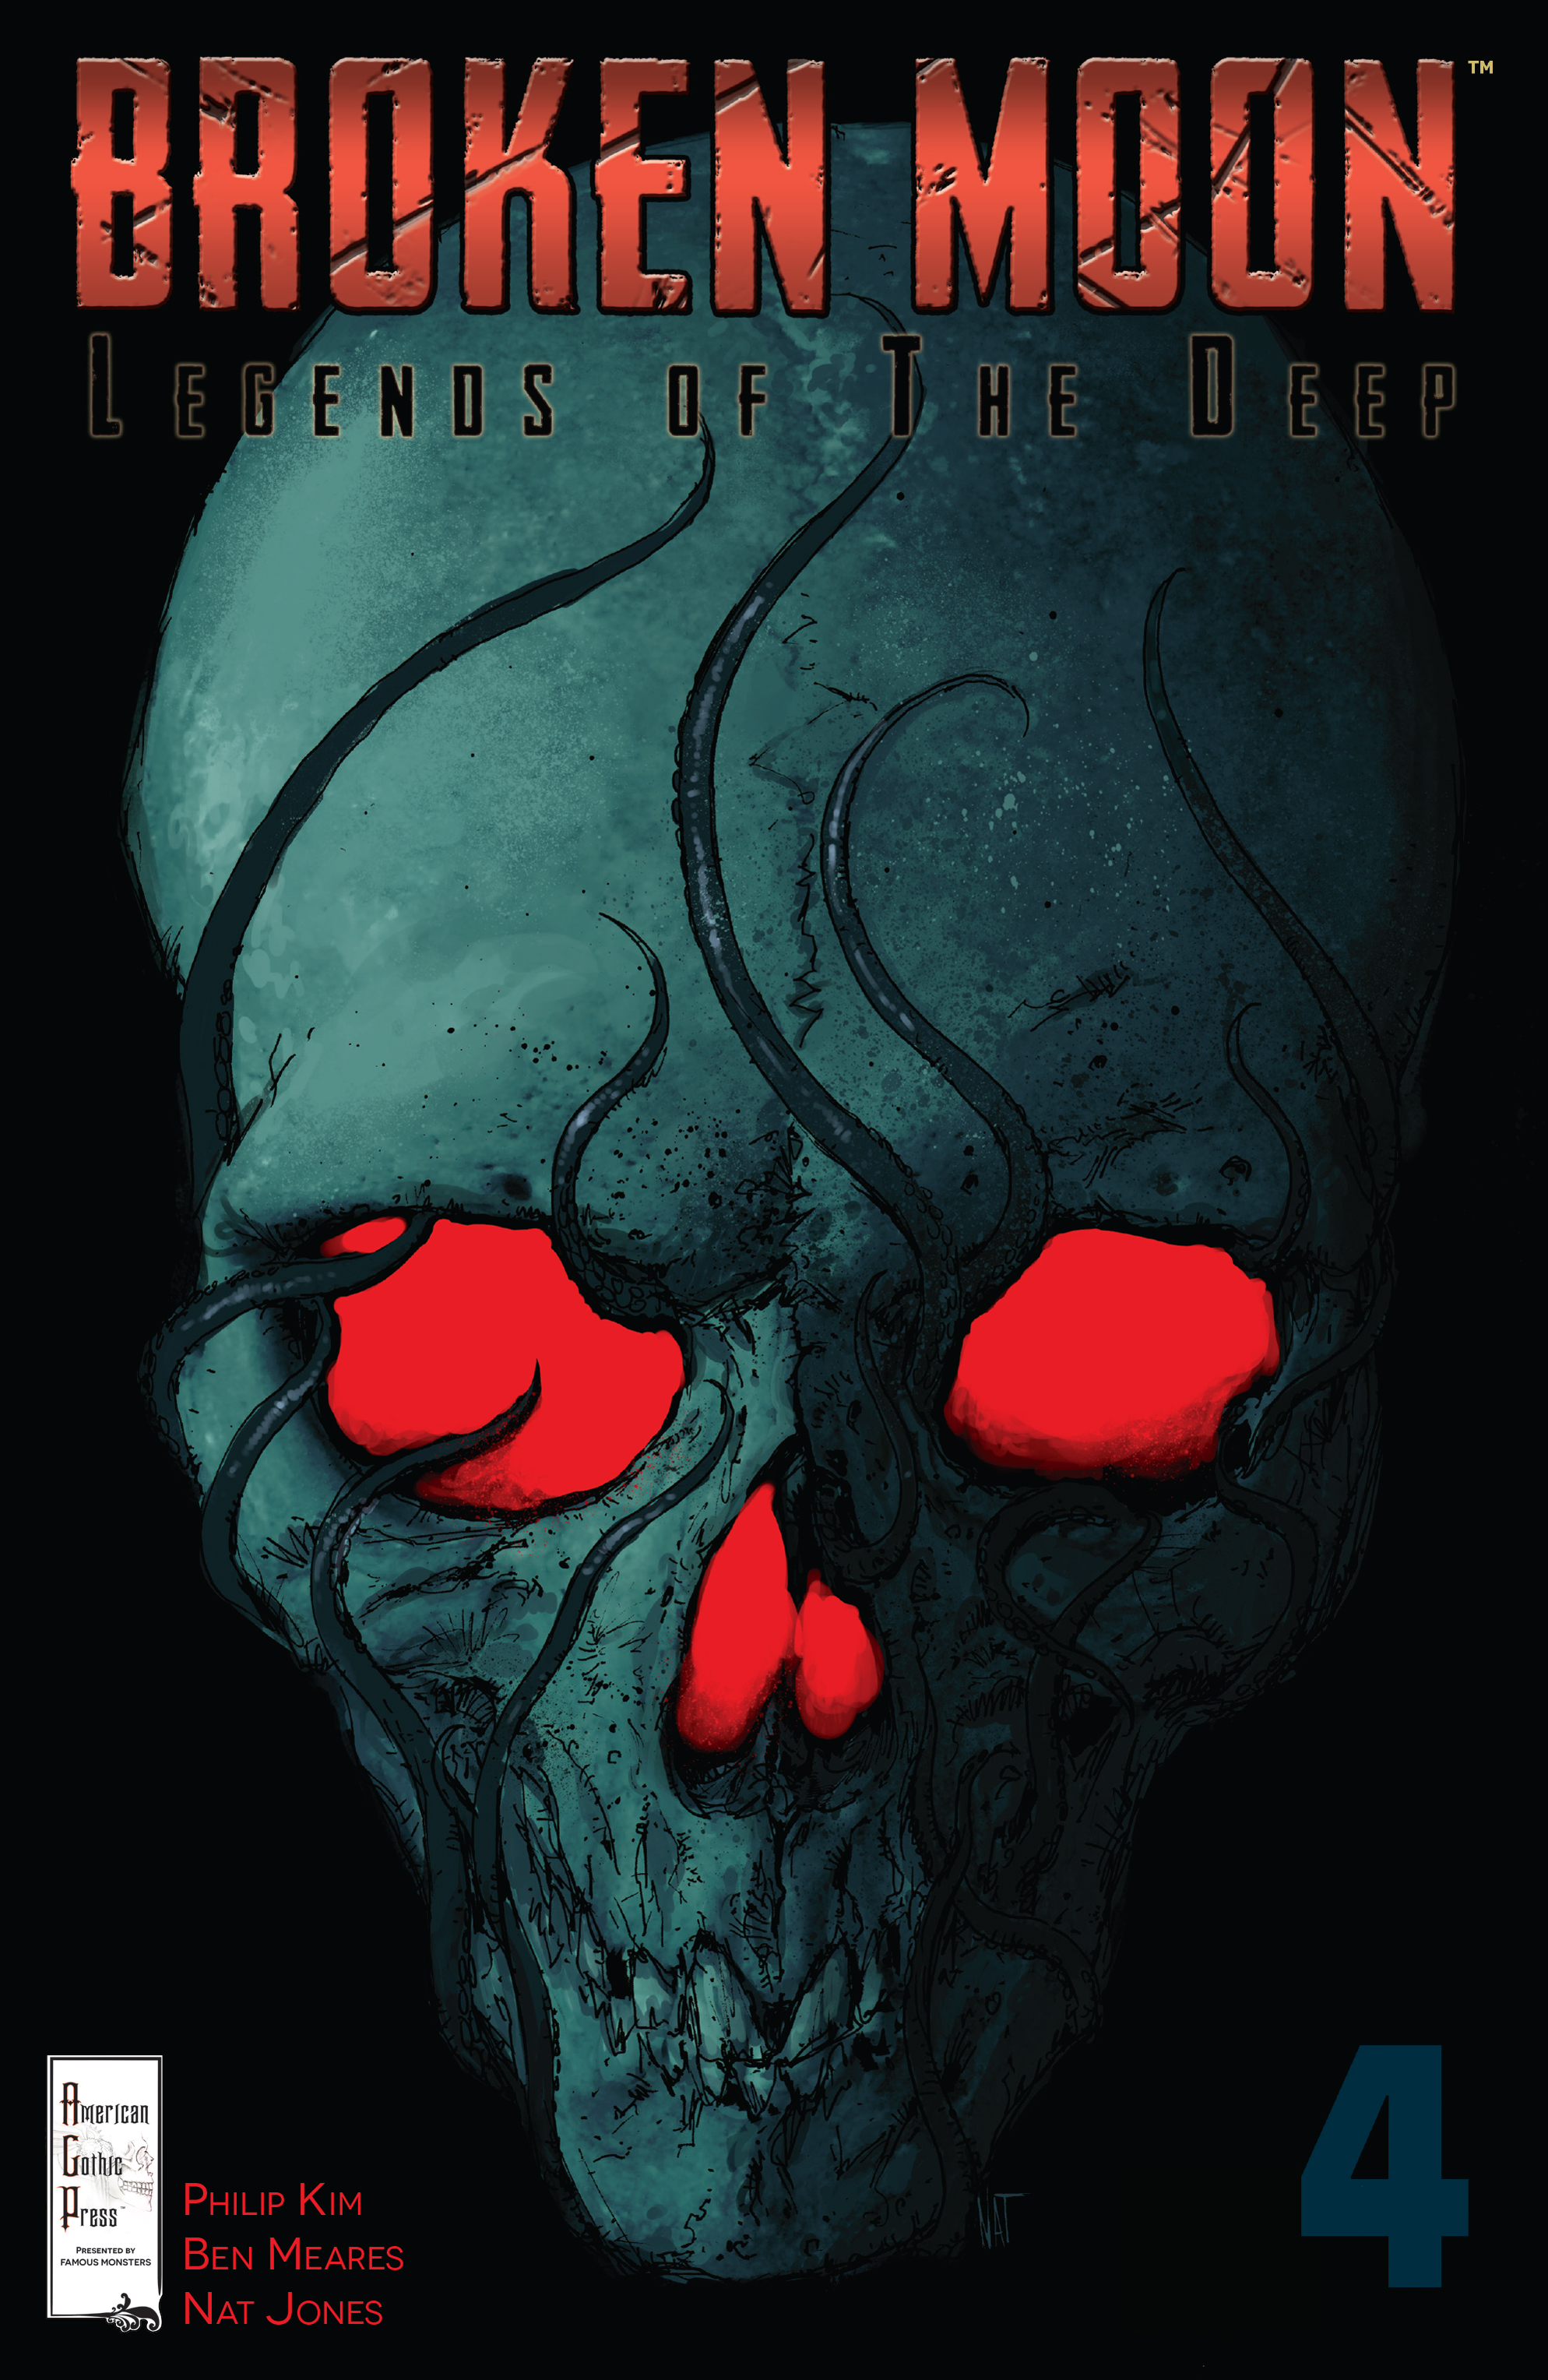 Read online Broken Moon: Legends of the Deep comic -  Issue #4 - 1